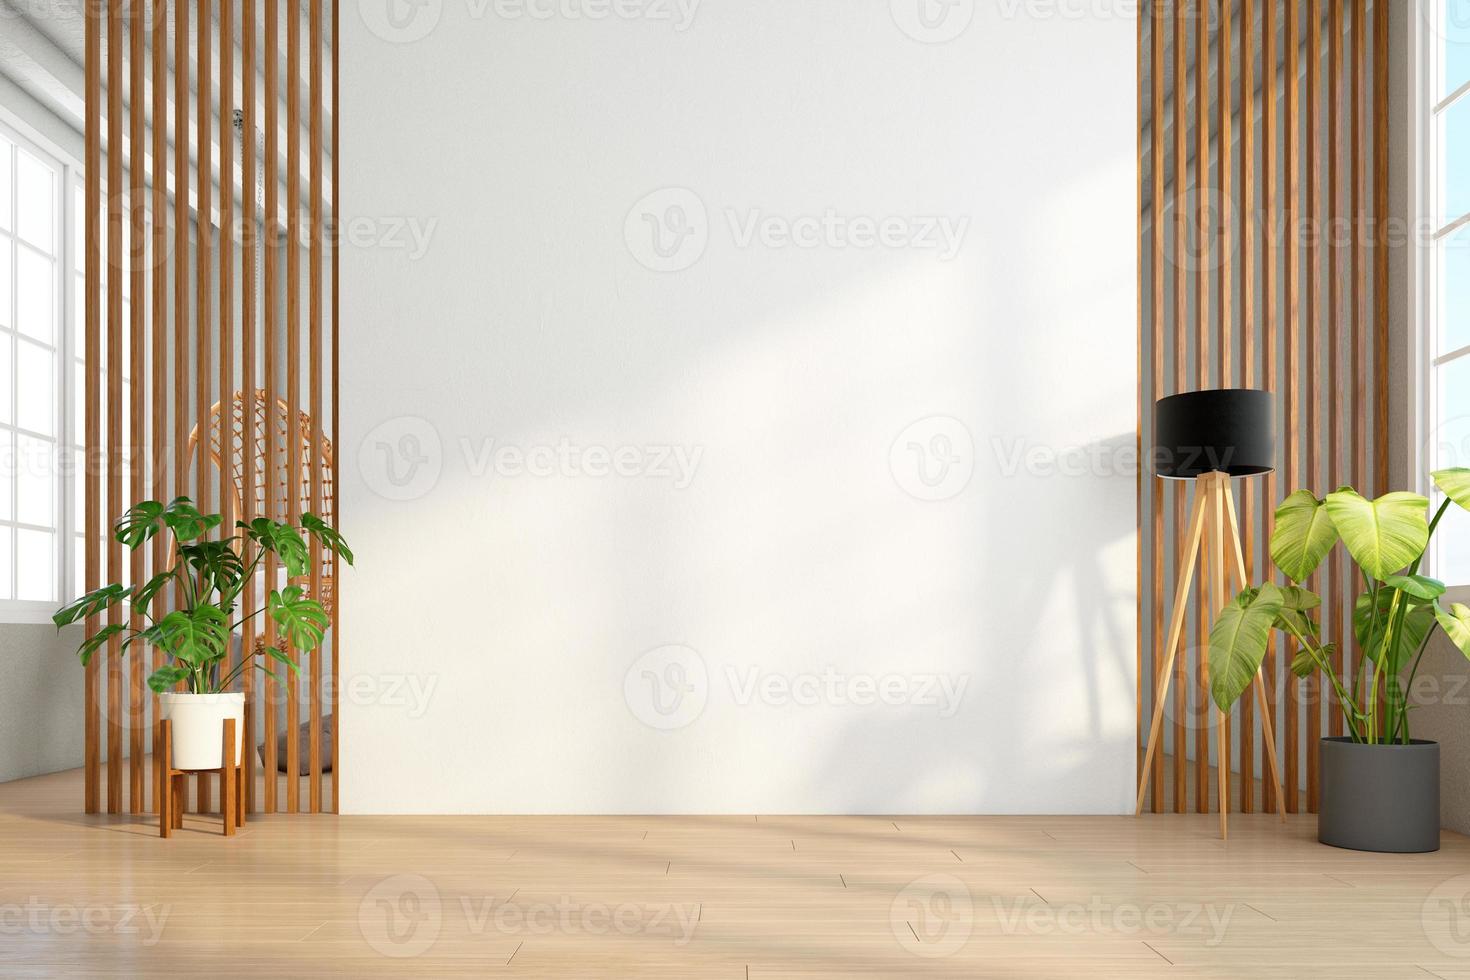 quarto vazio com parede de ripas de madeira e parede branca, lâmpada de assoalho. renderização em 3D foto